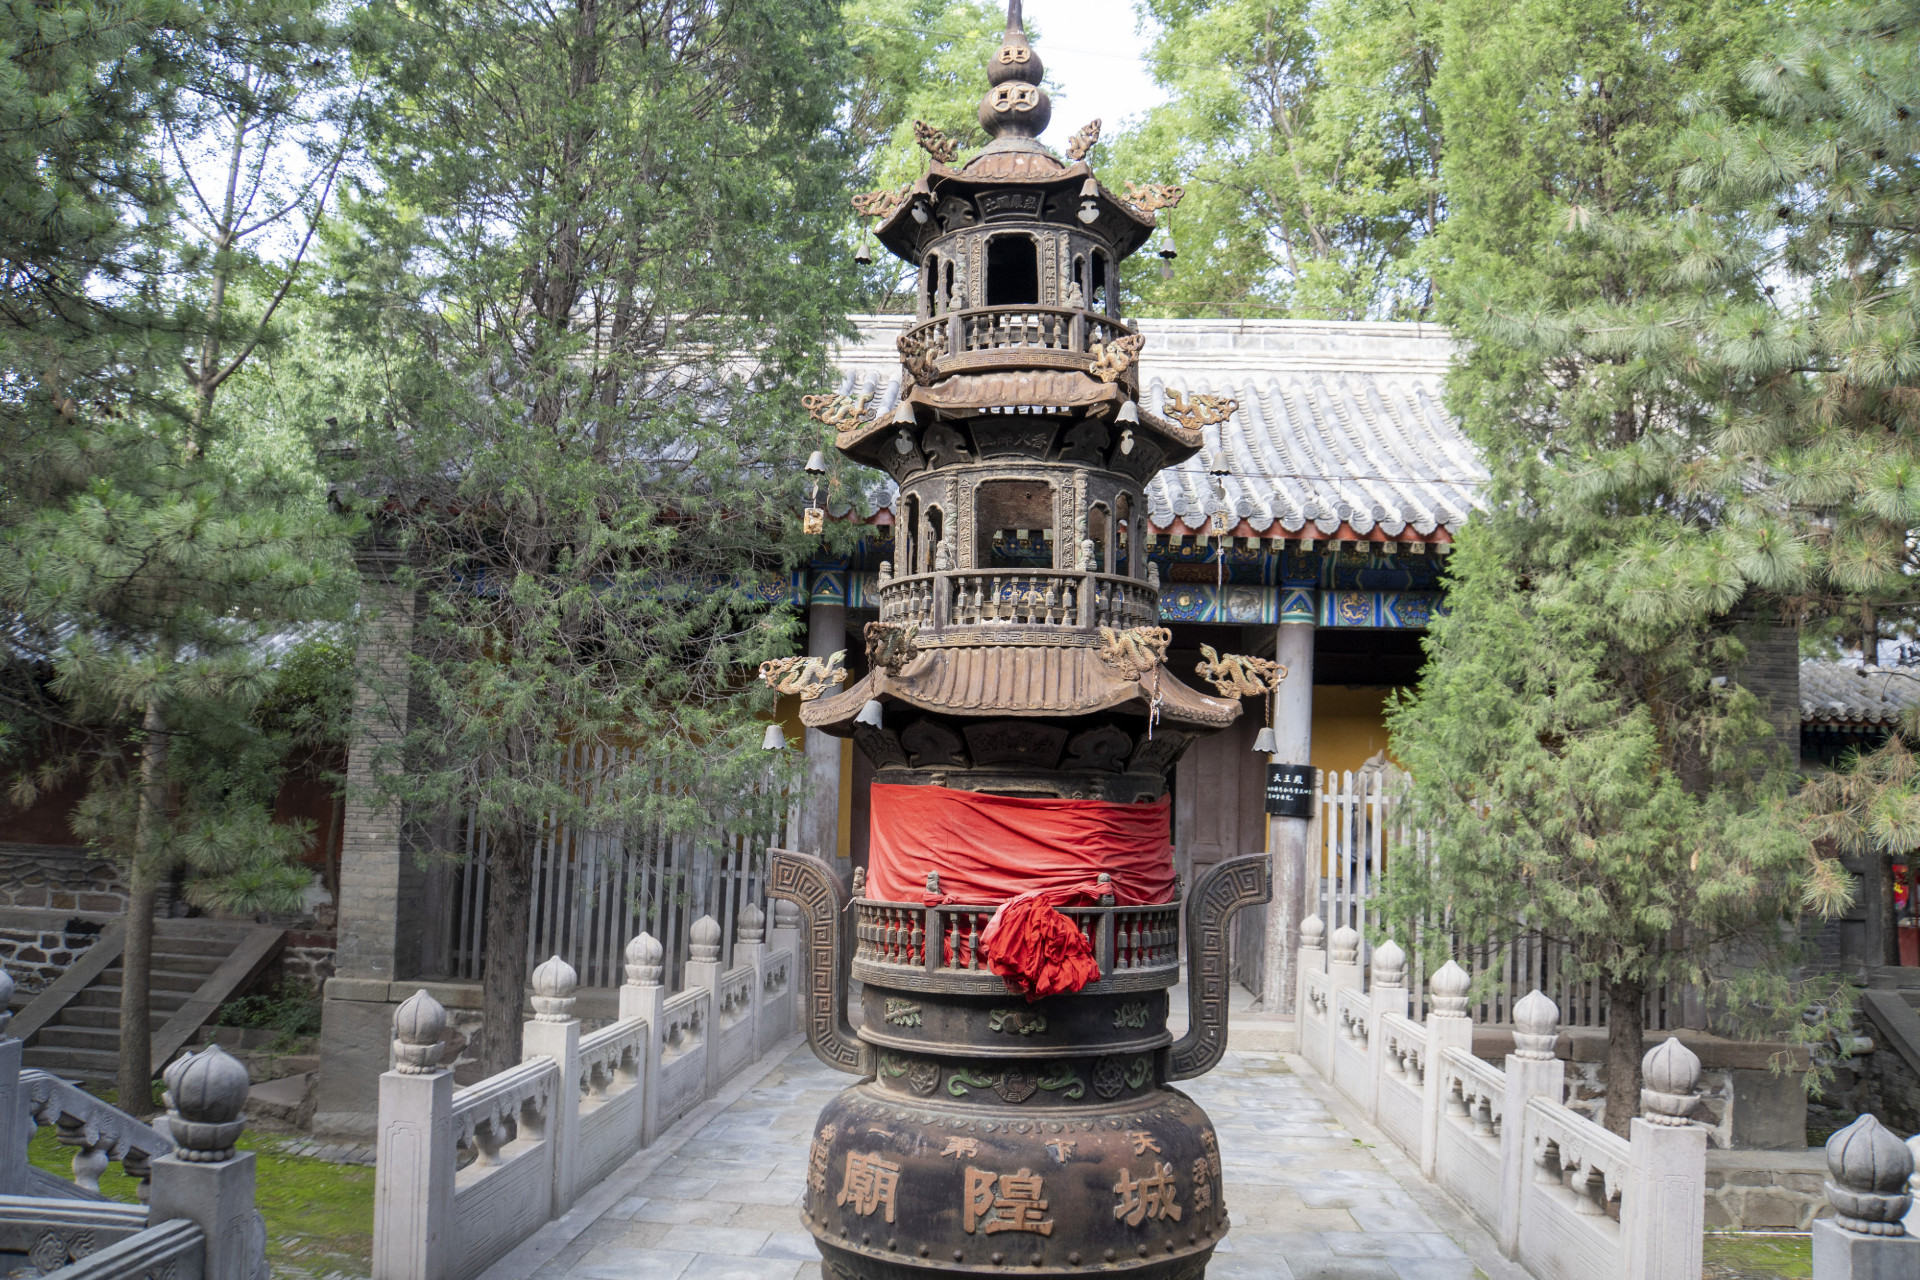 承德天下第一城隍庙,向游客展示悠远的历史和道教文化的魅力